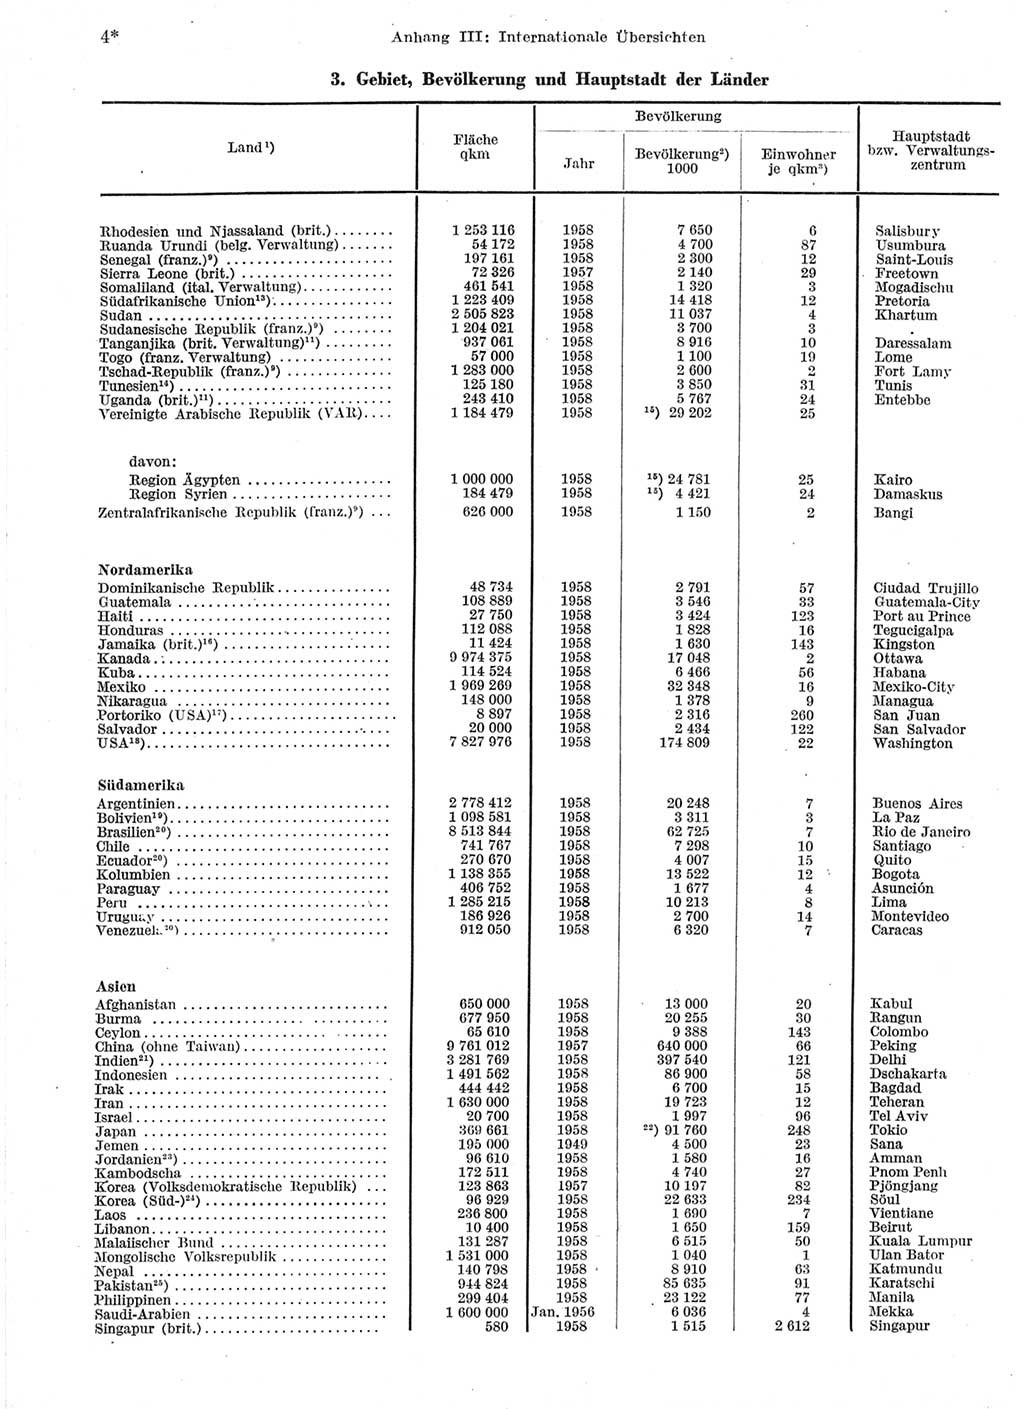 Statistisches Jahrbuch der Deutschen Demokratischen Republik (DDR) 1959, Seite 4 (Stat. Jb. DDR 1959, S. 4)